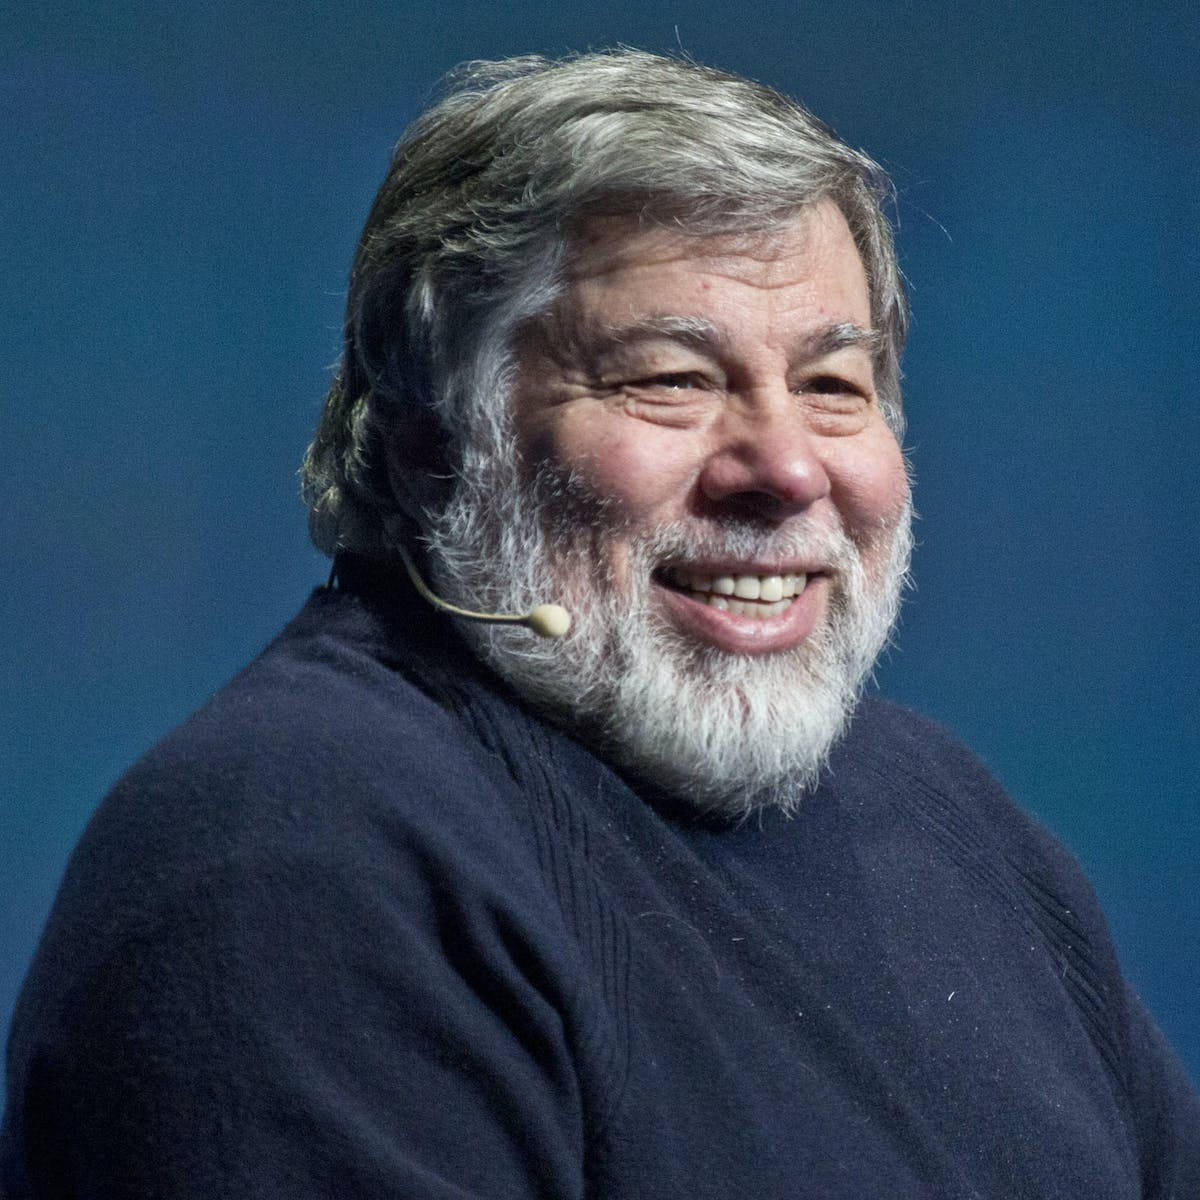 Steve Wozniak 1200 X 1200 Wallpaper